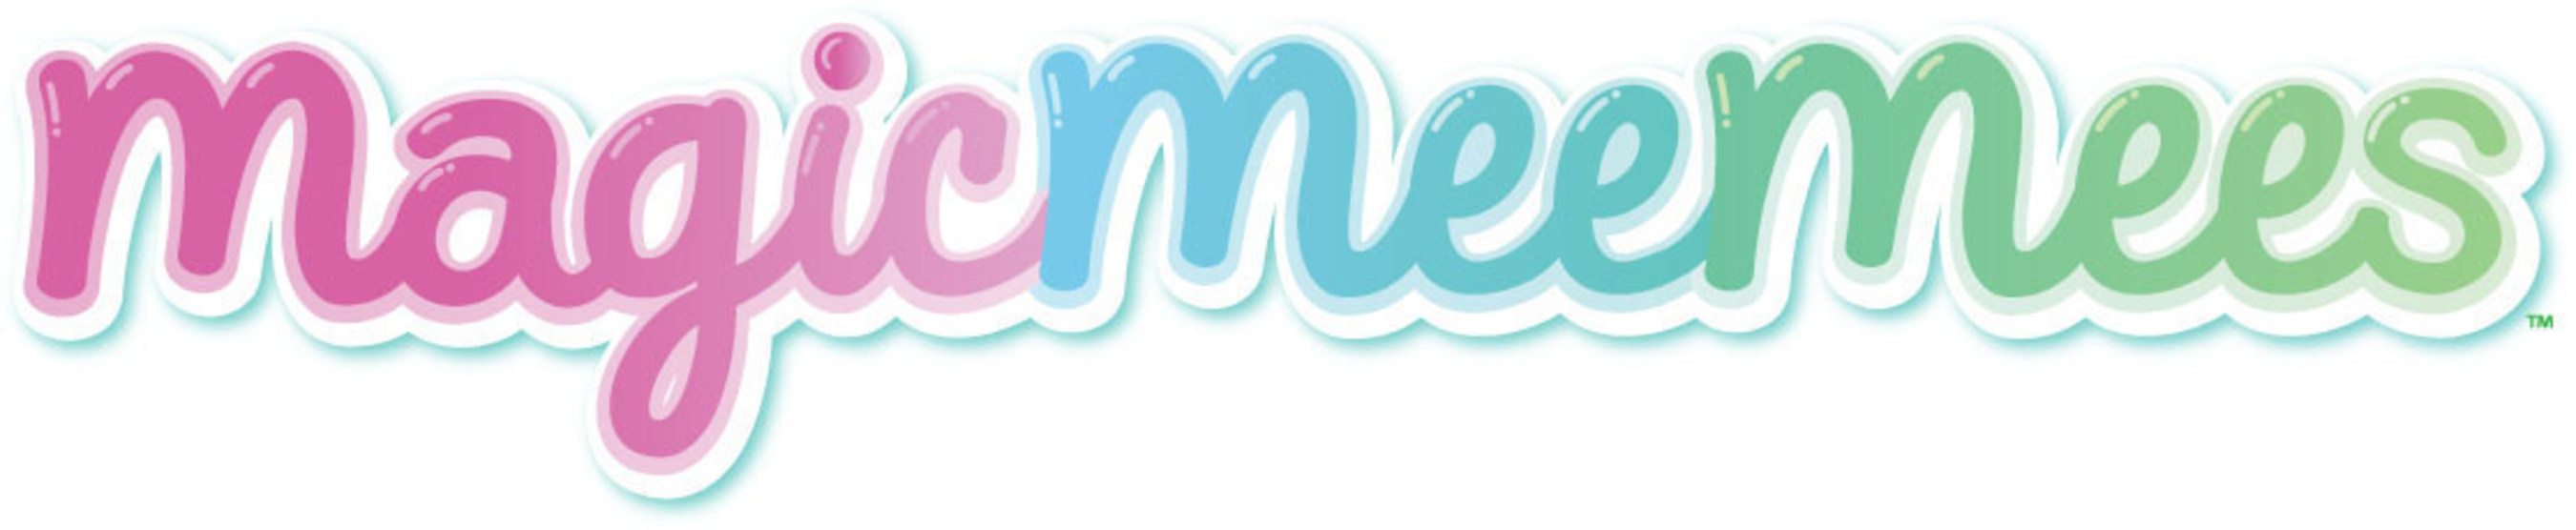 MagicMeeMees Logo